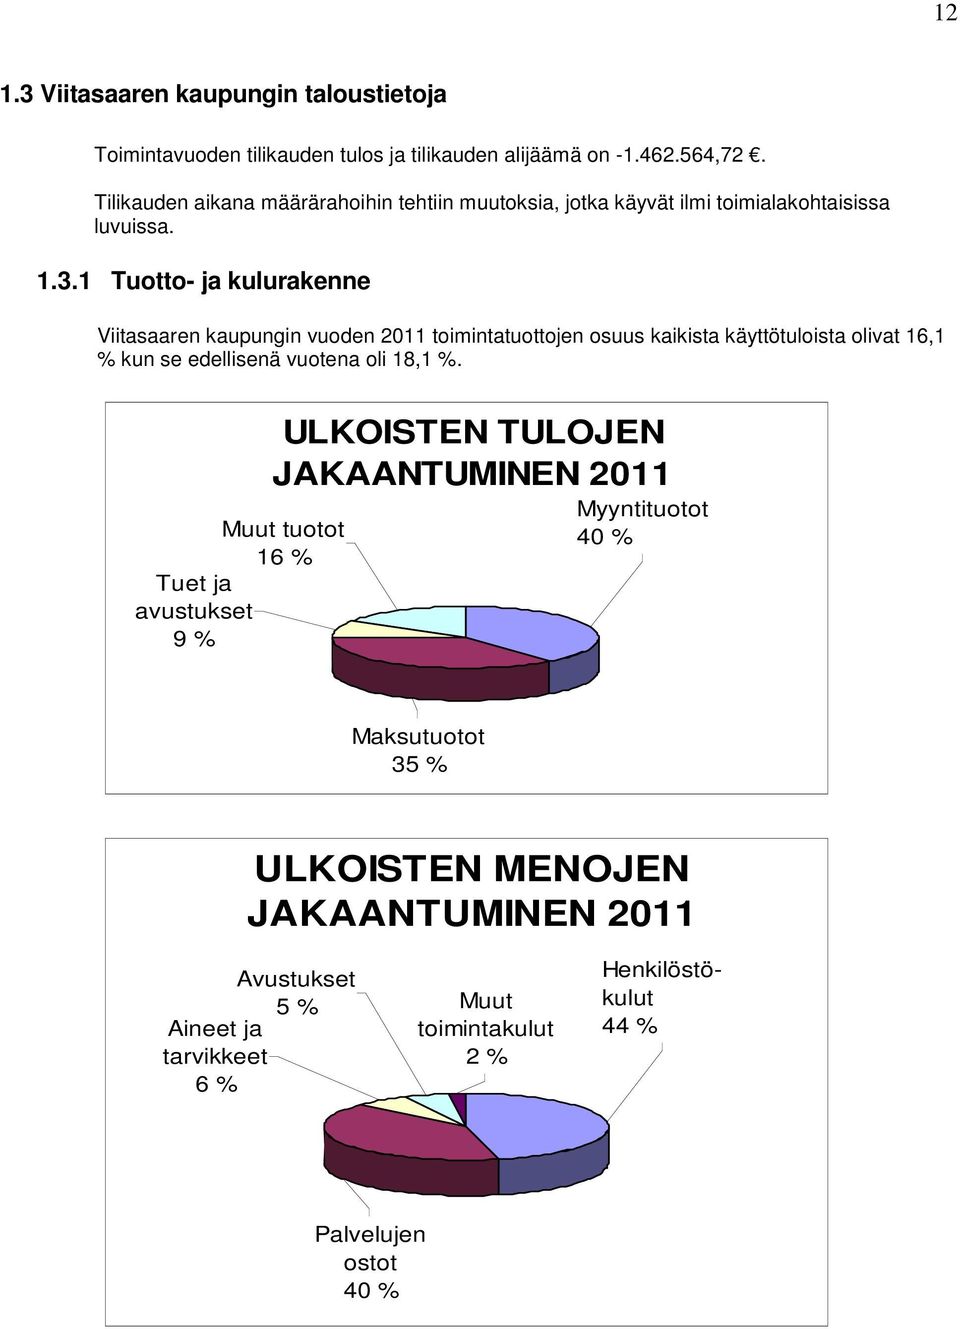 1 Tuotto- ja kulurakenne Viitasaaren kaupungin vuoden 2011 toimintatuottojen osuus kaikista käyttötuloista olivat 16,1 % kun se edellisenä vuotena oli 18,1 %.